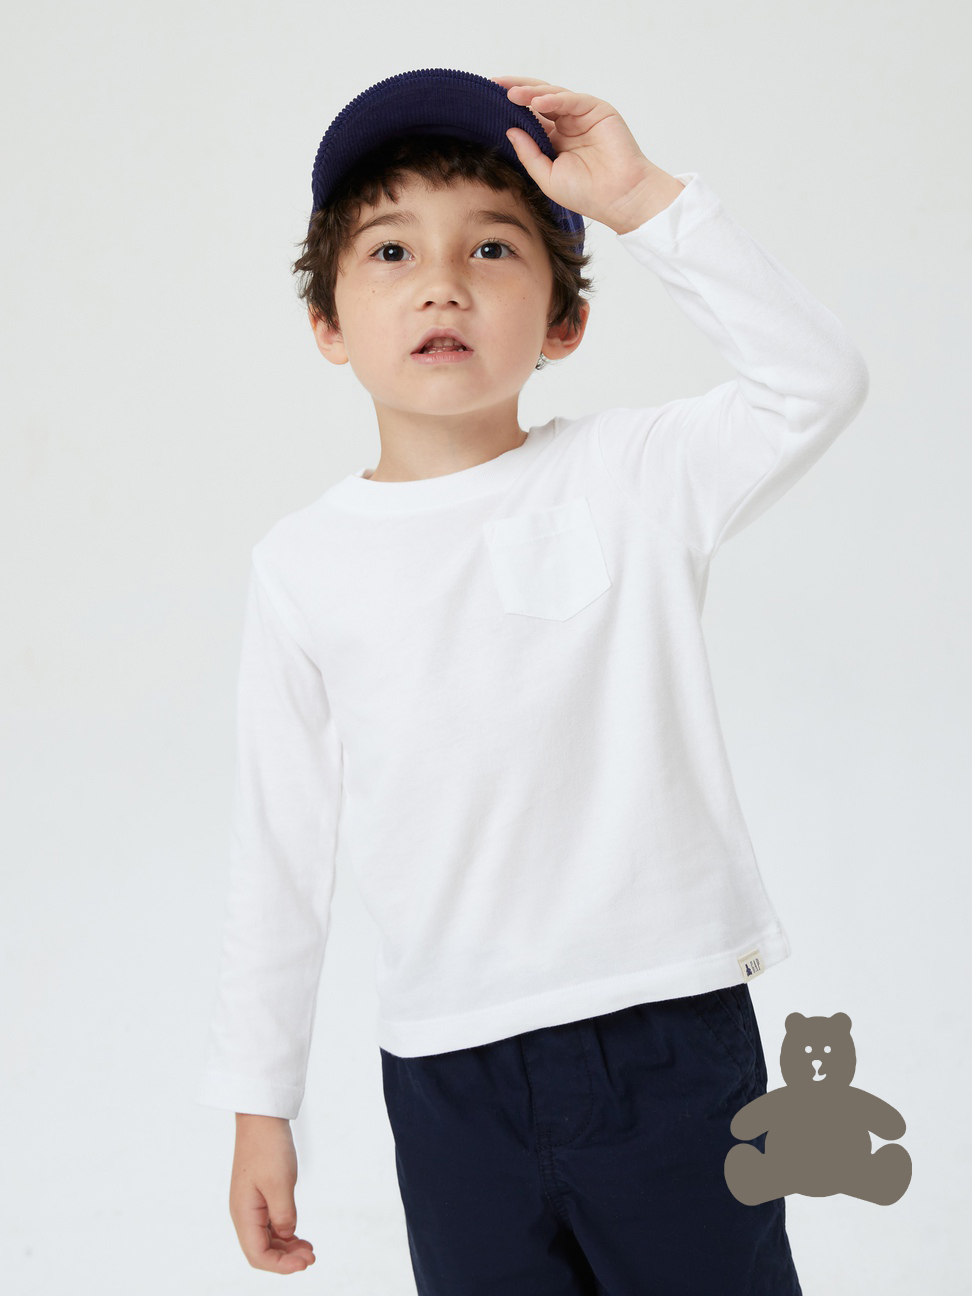 男幼童|布萊納系列 基本款純棉長袖T恤